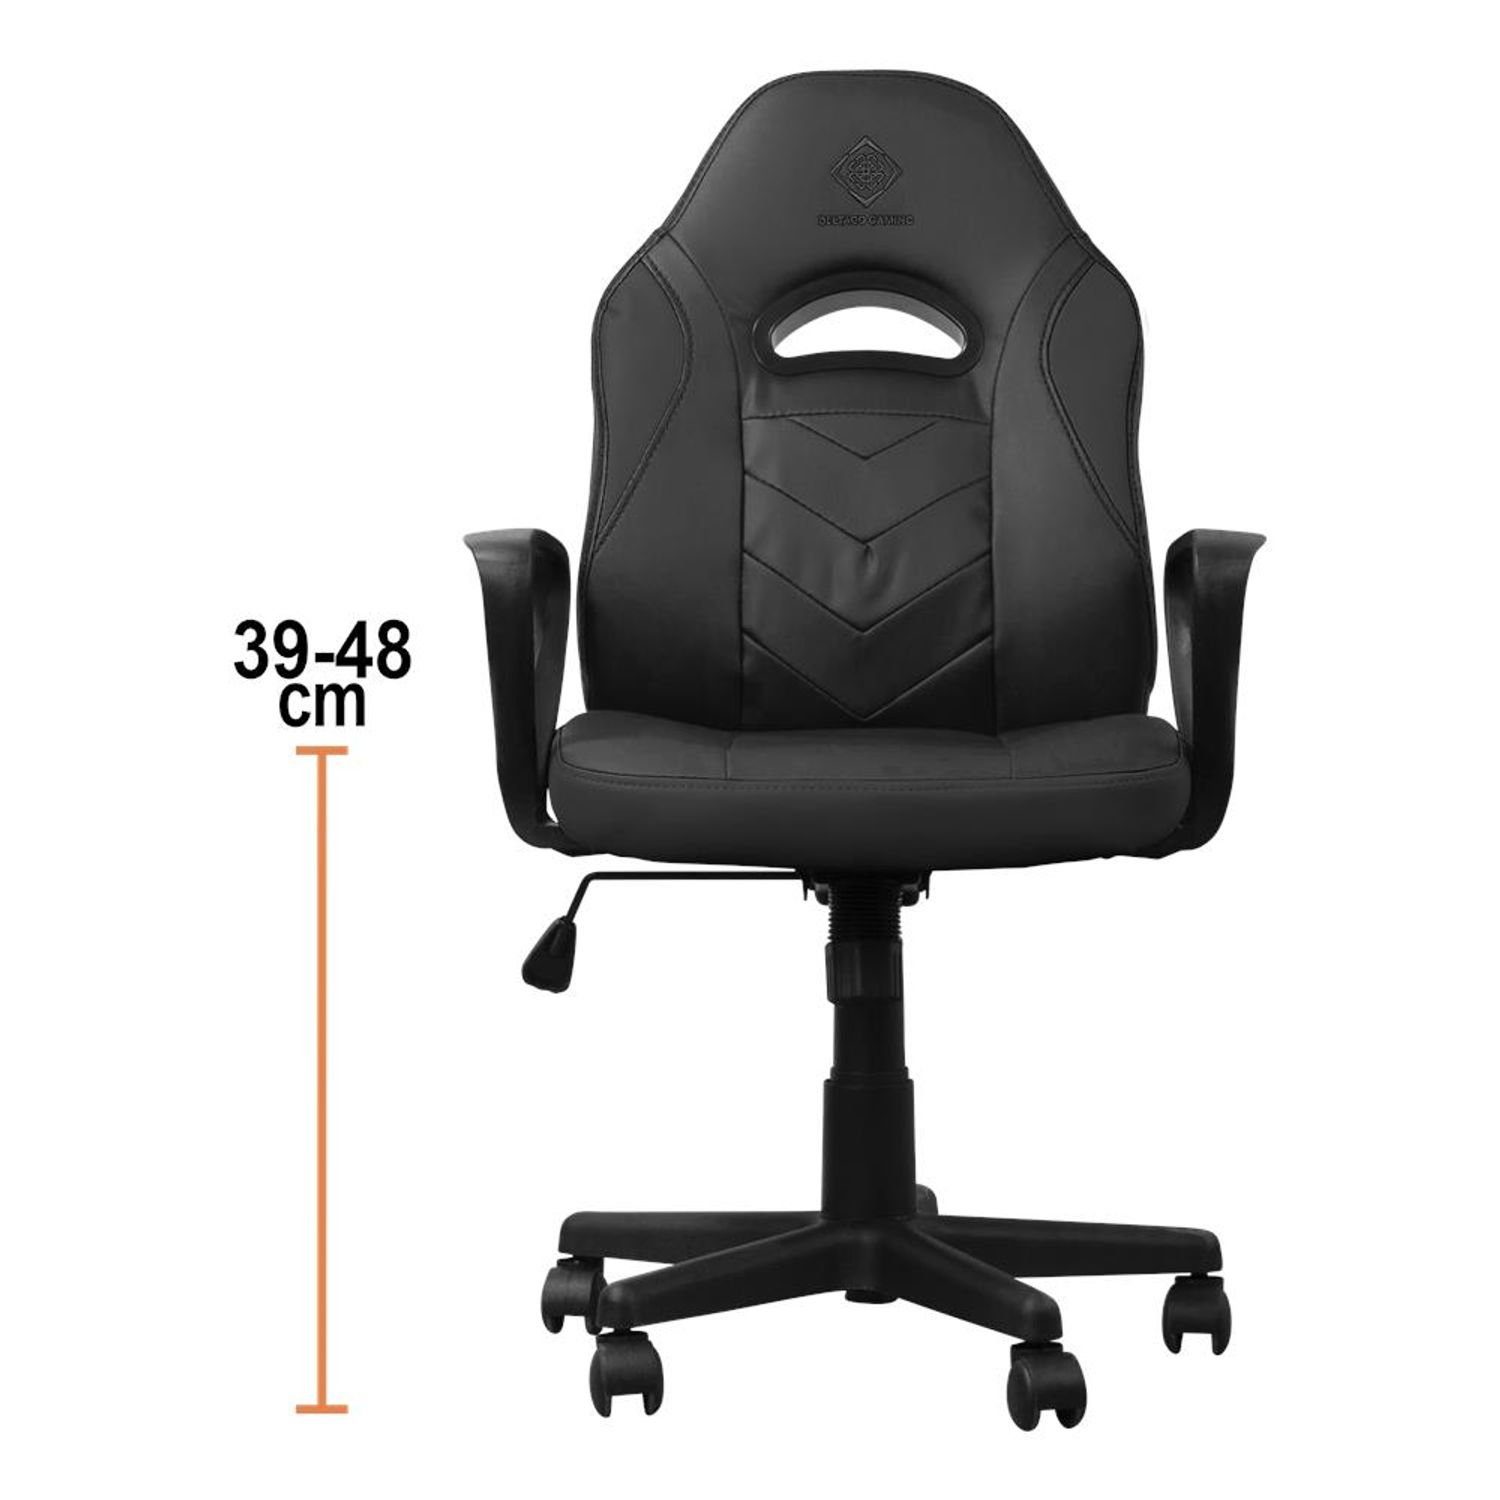 DELTACO Gaming-Stuhl DC110 klein Herstellergarantie Jahre langem bequem inkl. nach selbst Sitzen extra 5 Stuhl (kein Gaming schwarz Set)